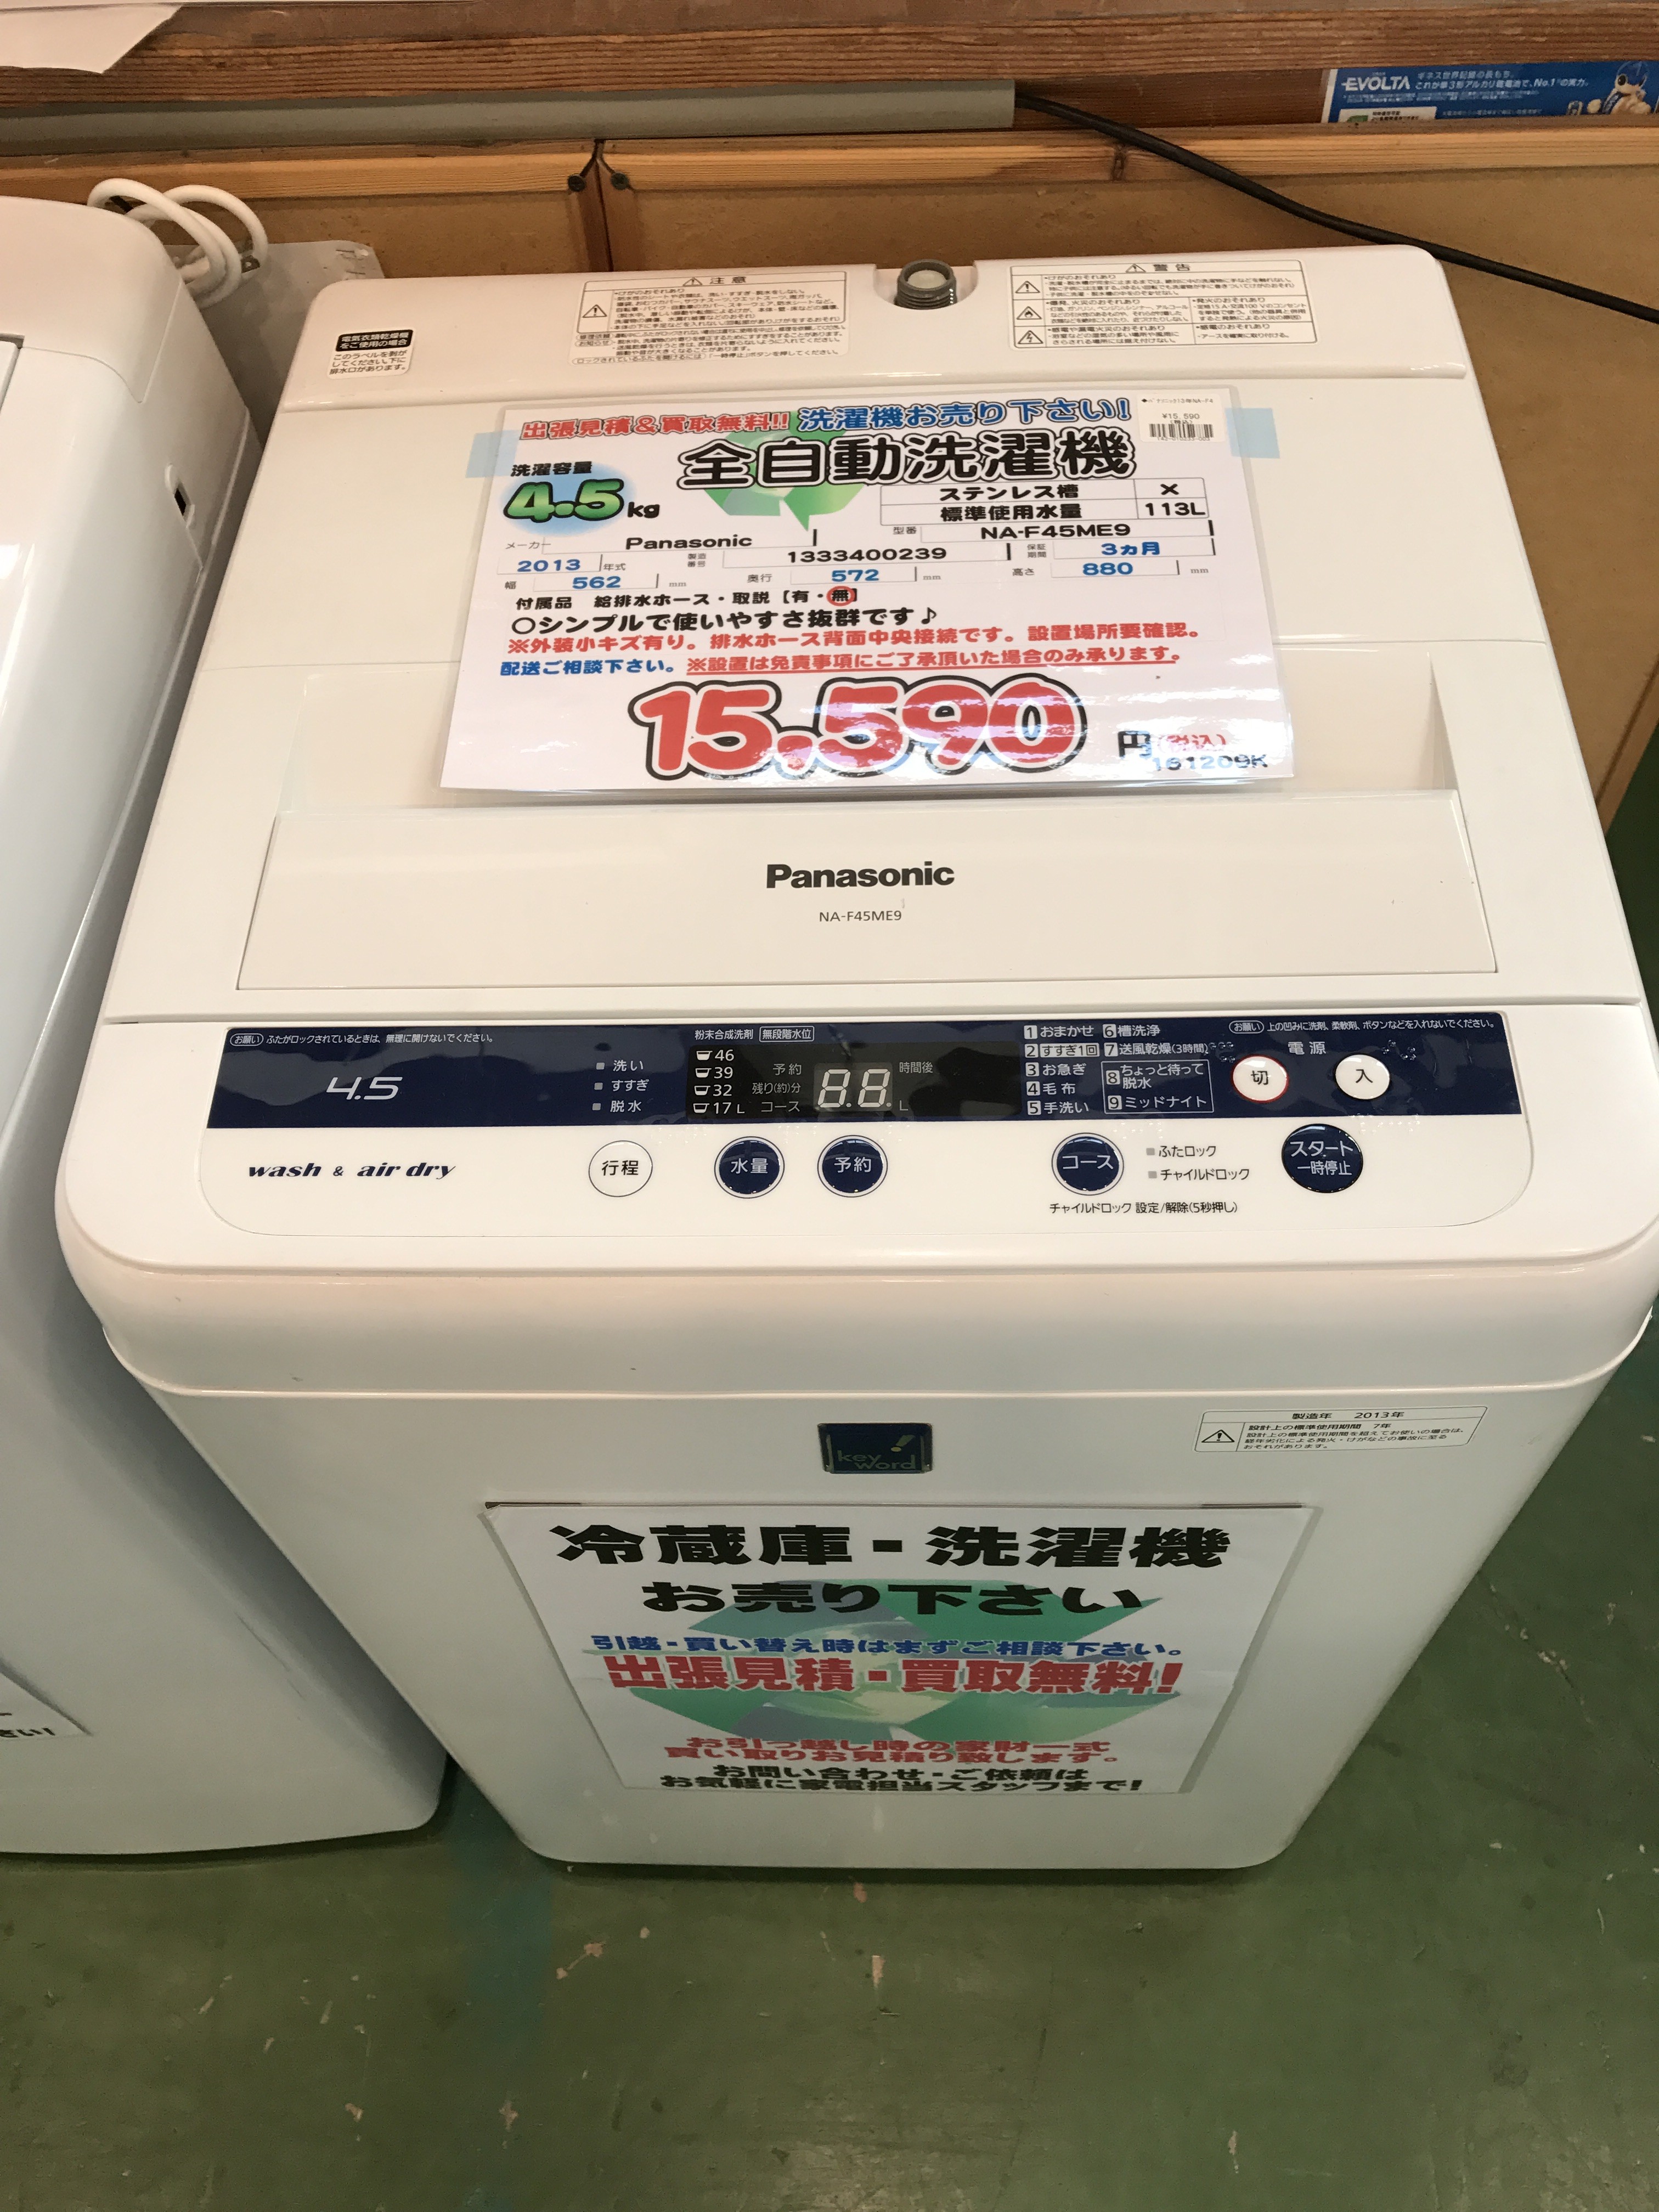 » Panasonicパナソニック 4.5kg全自動洗濯機 NA-F45ME9 買取致しました|愛品館八千代店 | リサイクルショップ 中古品